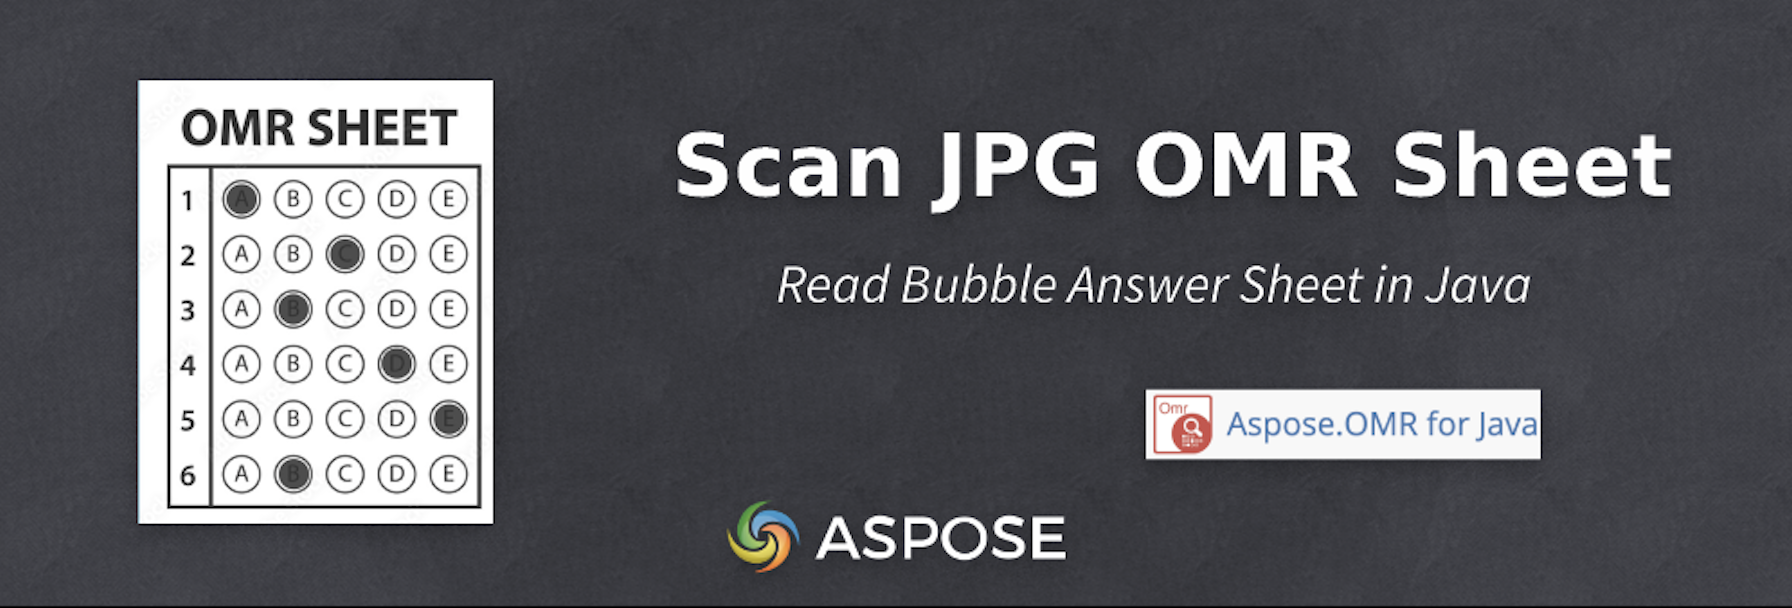 Scan Bubble Answer Sheet in Java - OMR Sheet JPG